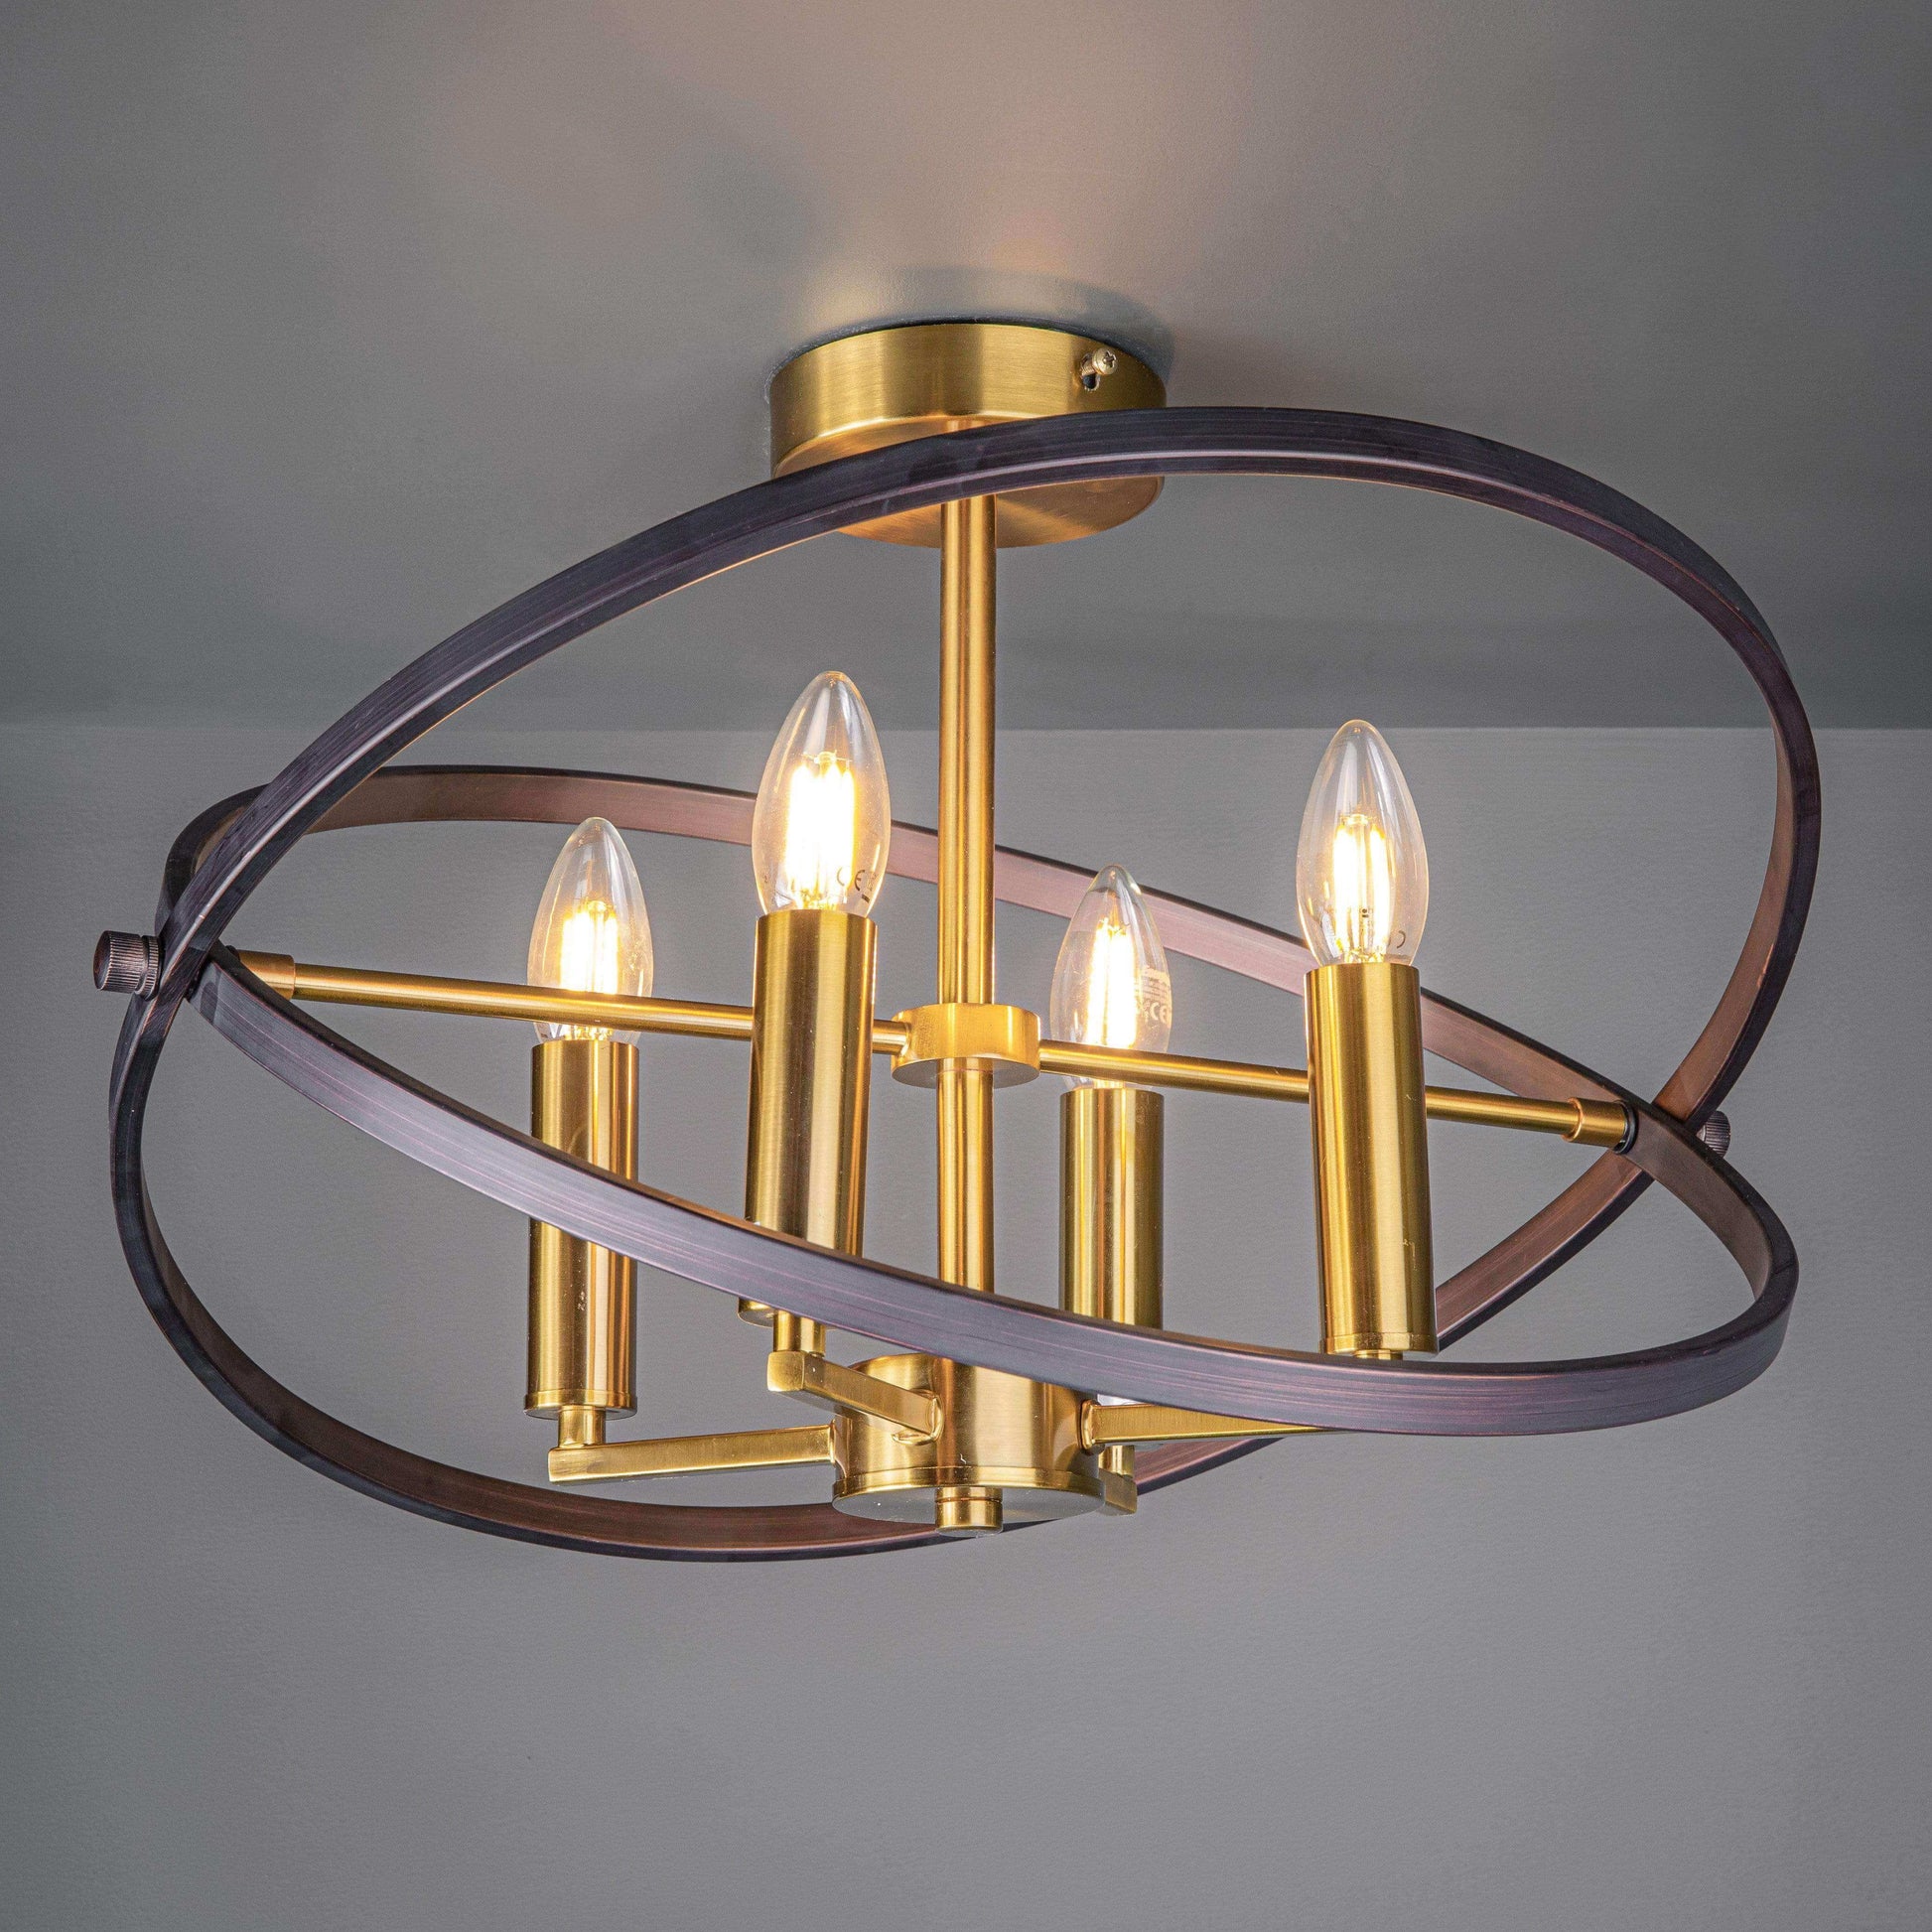 Lights  -  4 Light Bronze/Gold Semi Flush Ceiling light  -  50147035